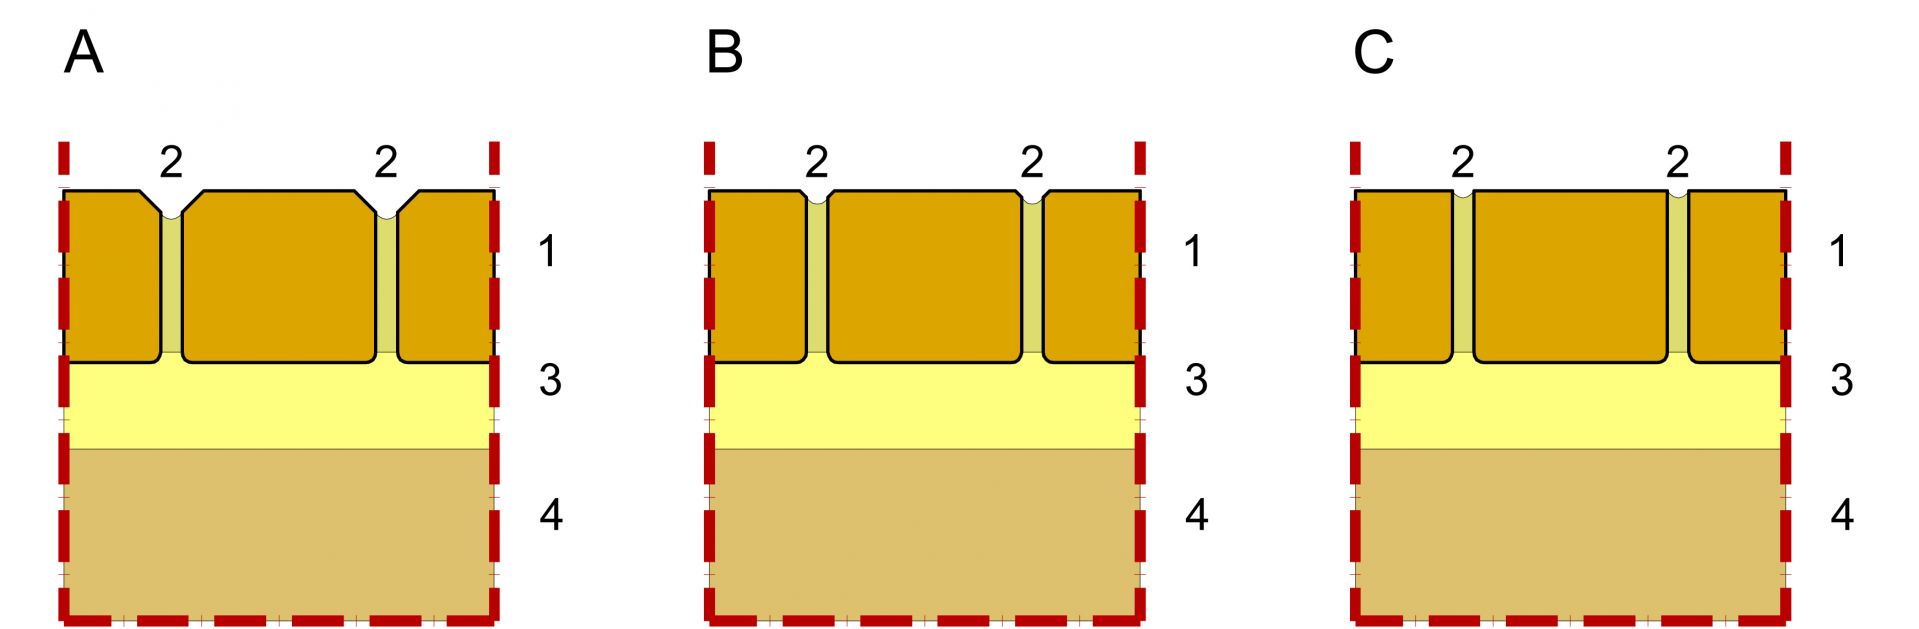 Przekroje poszczególnych rodzajów kostki (rys. Buszrem)
A. Kostka z fazą
B. Kostka z mikrofazą
C. Kostka bez fazy
1. Kostka brukowa
2. Fuga
3. Podsypka
4. Podbudowa